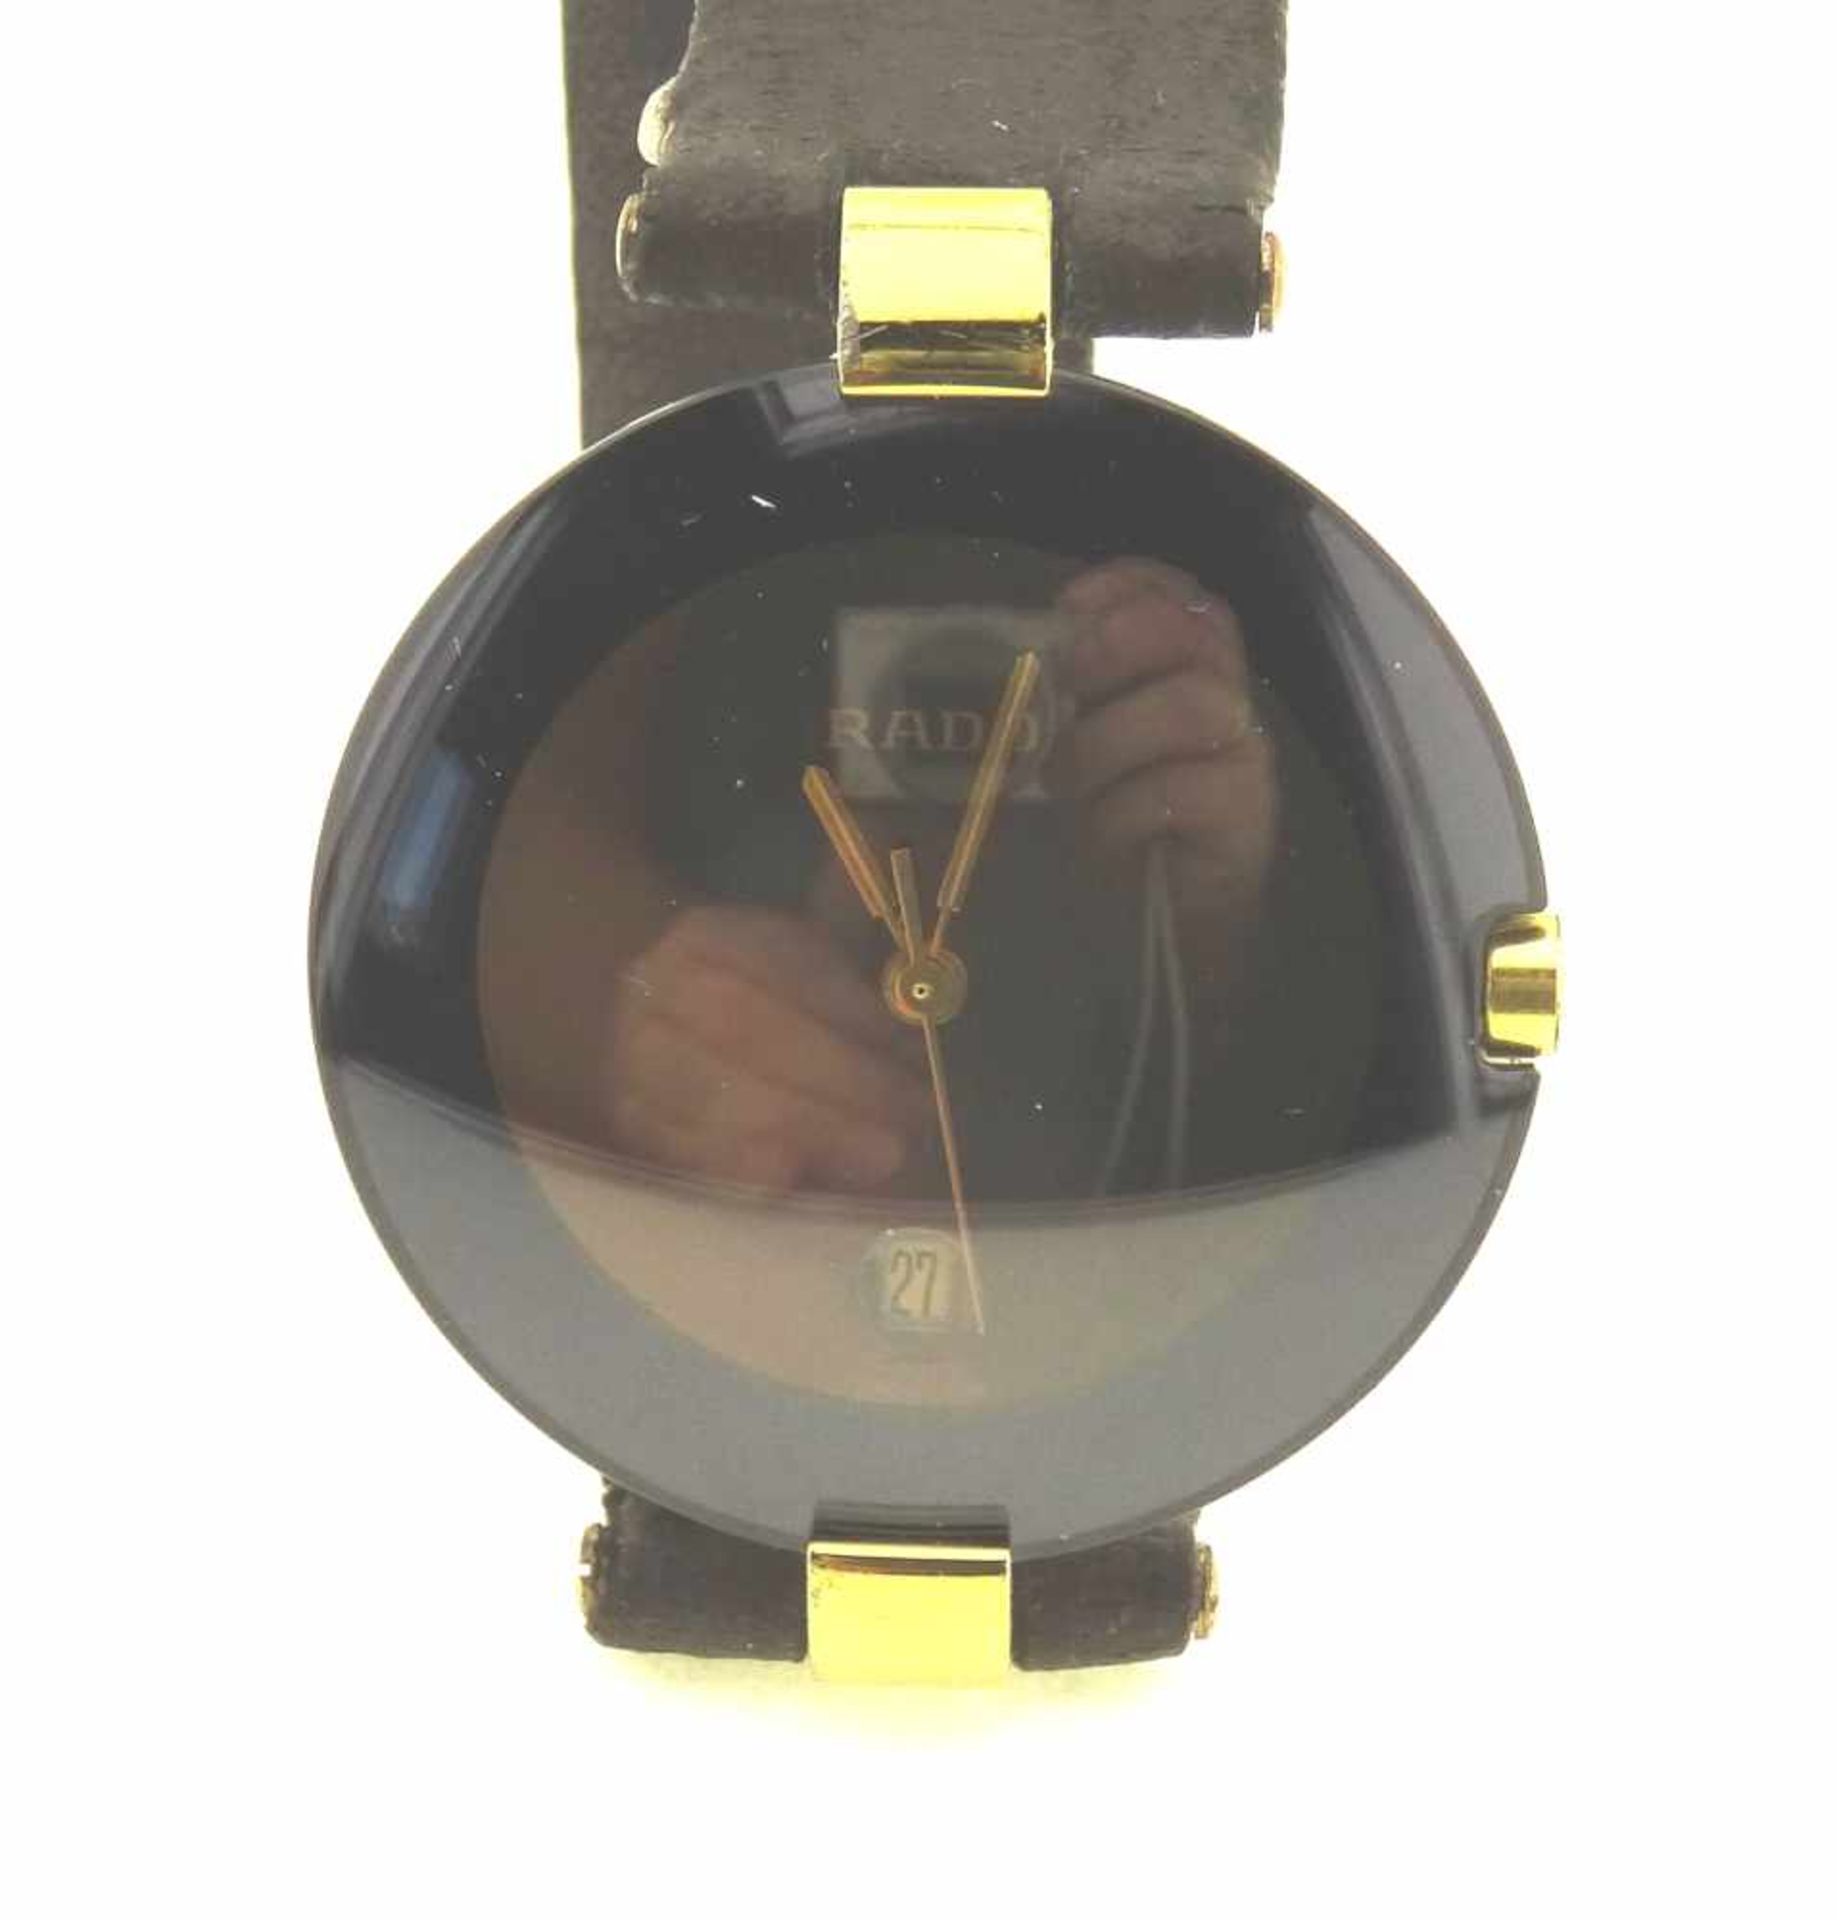 Rado Armbanduhr Medium Modell 129.4077.4N, Durchmesser 30mm, mit neuem Originalglas ( Safir ), und